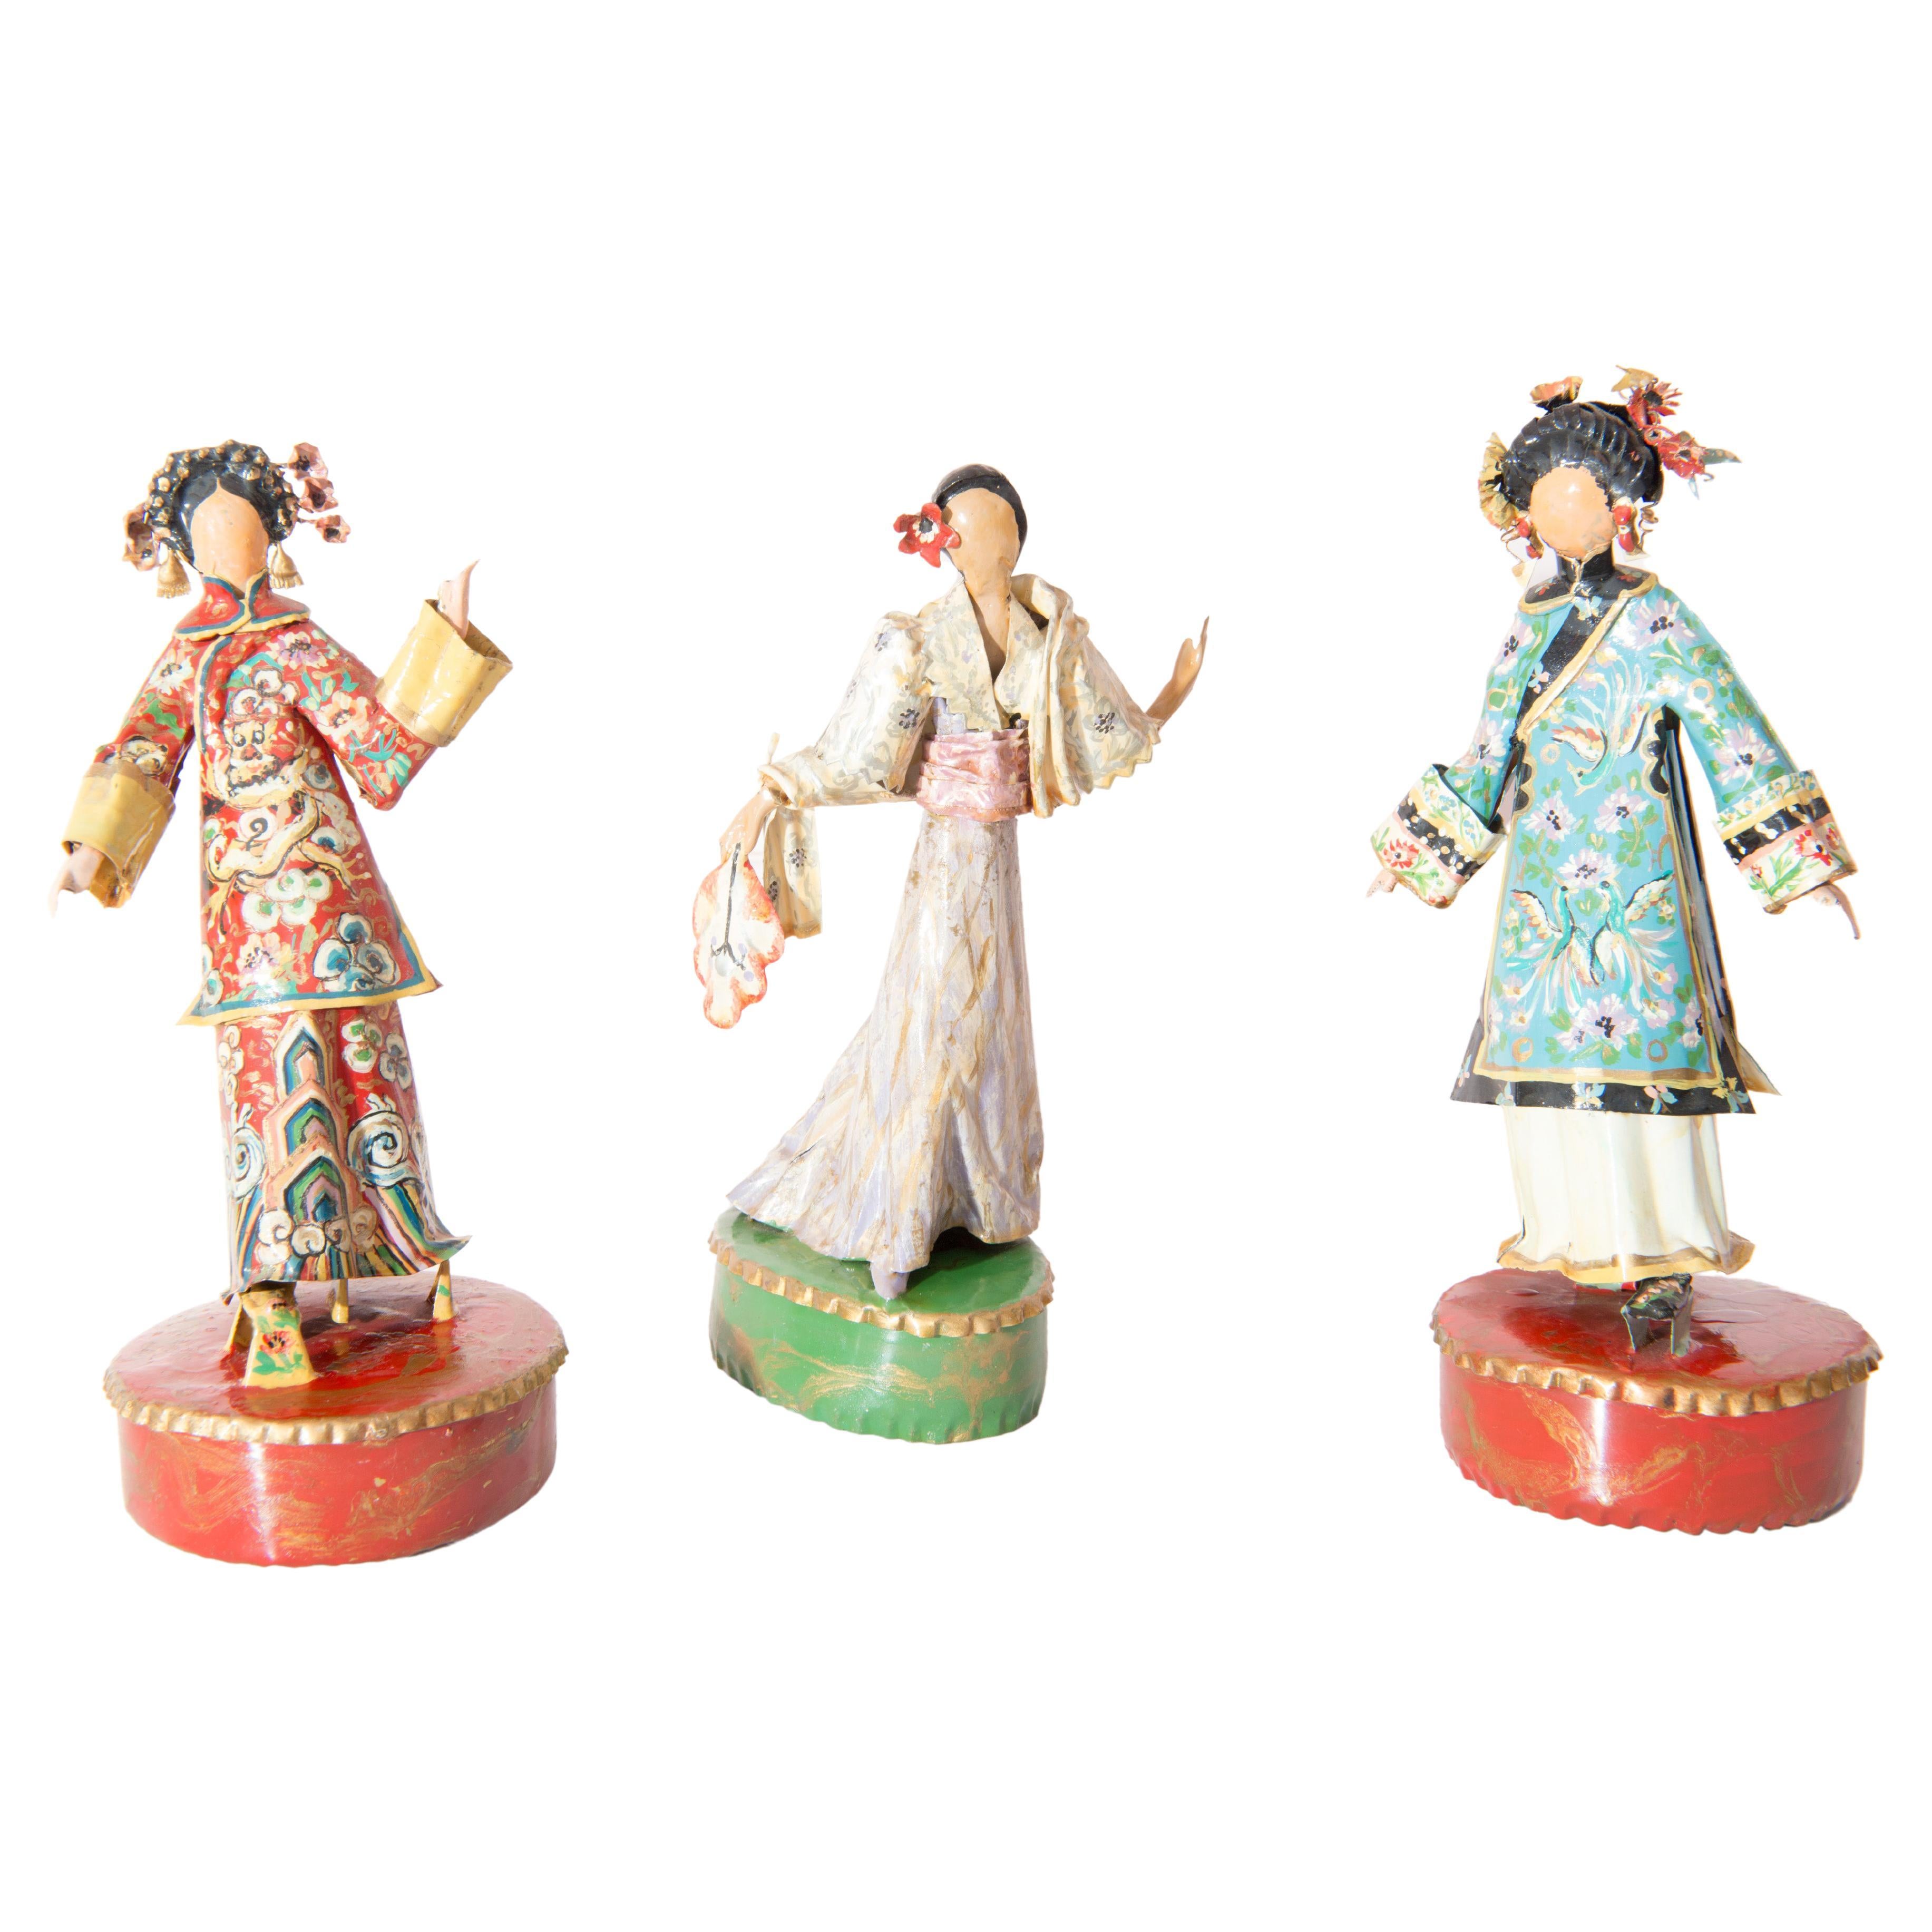 Asiatische dreiteilige Skulpturen mit Kostümen von Lee Menichetti